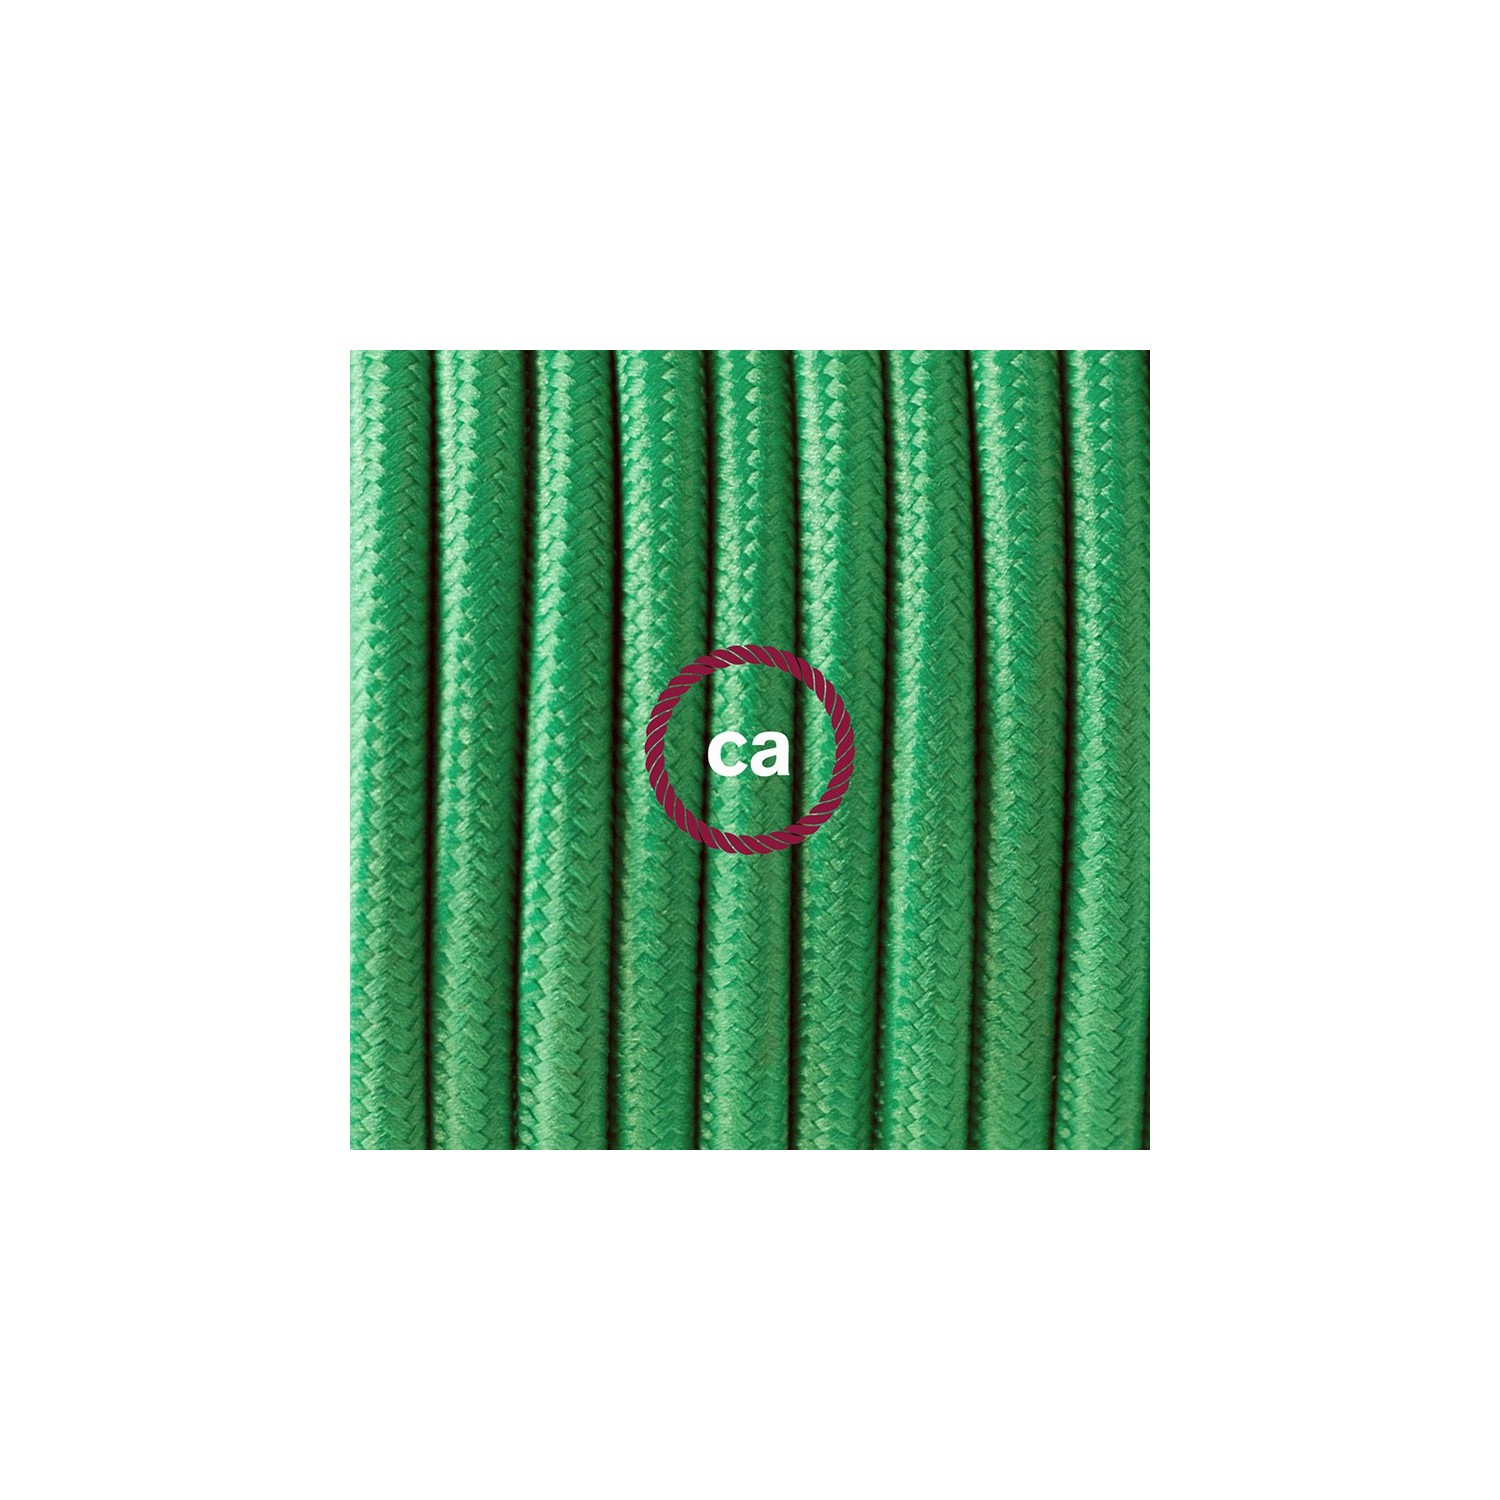 Stehleuchte Anschlussleitung RM06 Grün Seideneffekt 3 m. Wählen Sie aus drei Farben bei Schalter und Stecke.